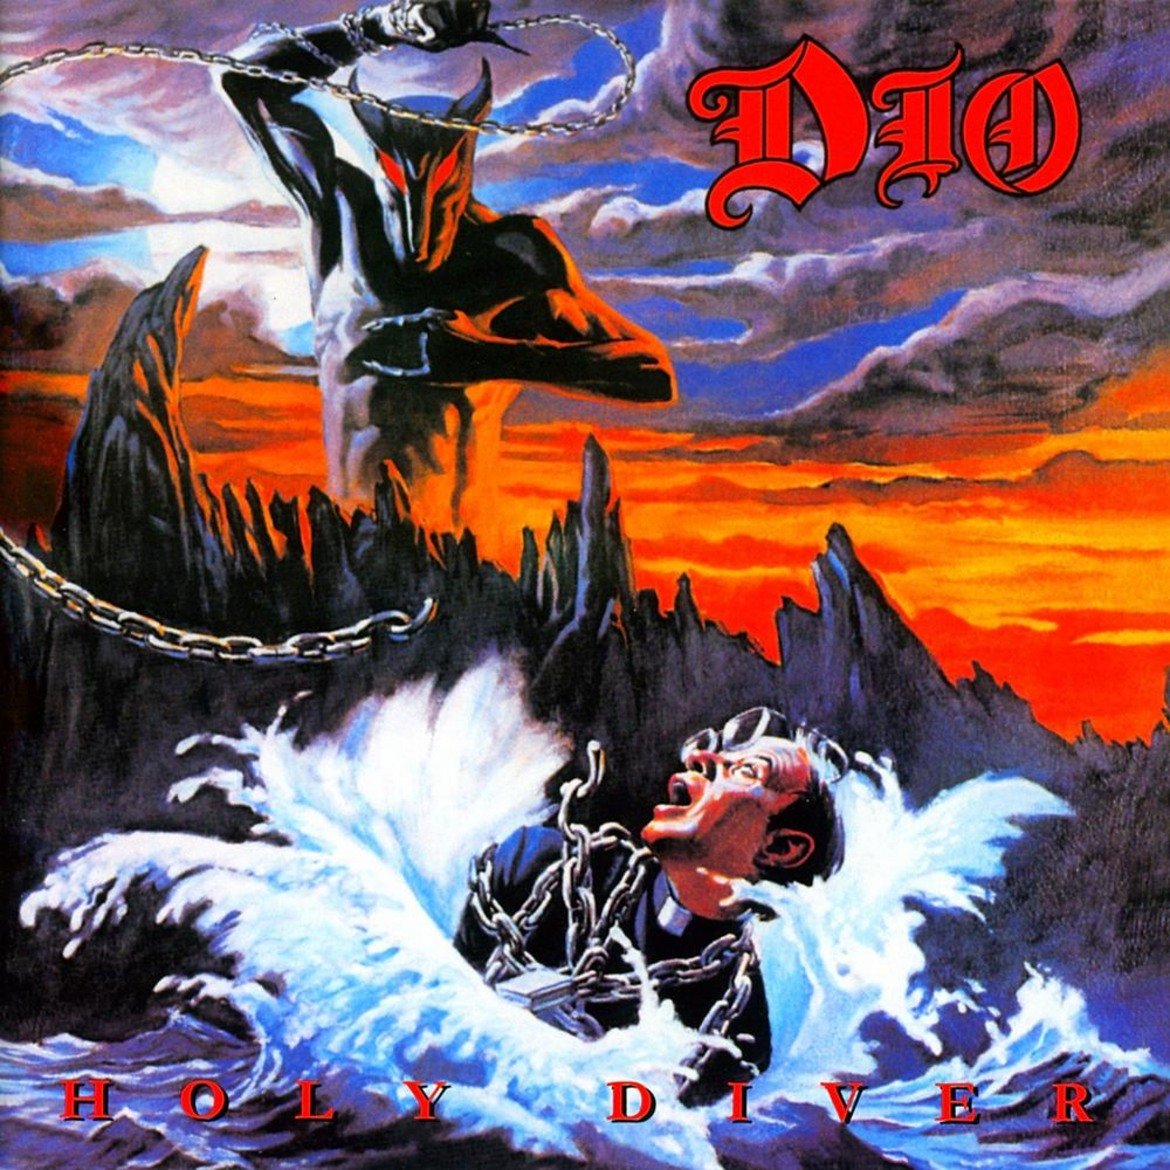 Dio - Holy Diver
Една от най-емблематичните песни, не само за соловата банда на Рони Джеймс Дио, но и за целия хард рок, Holy Diver притежава запомнящ се и надъхващ китарен риф, който те кара да клатиш глава в такт. 
